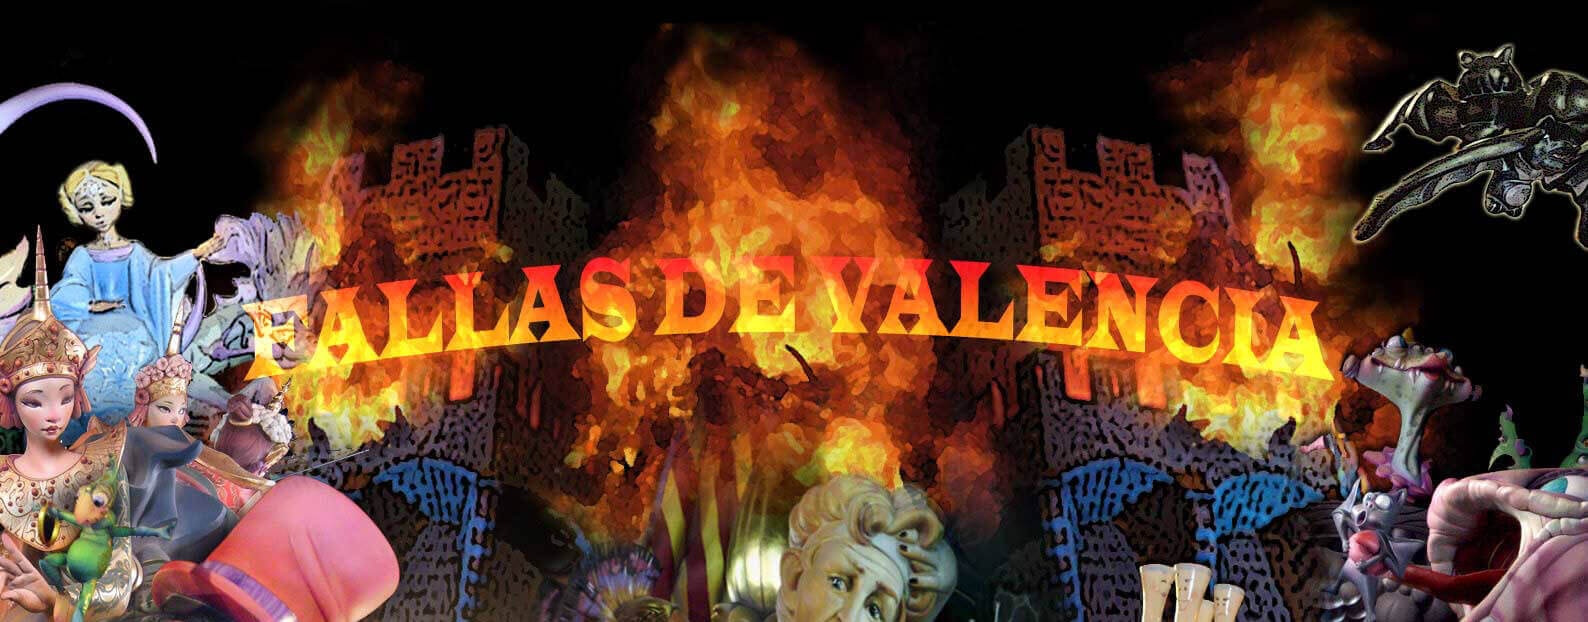 Валенсийский праздник Лас Фальяс (Las Fallas) признан наследием ЮНЕСКО